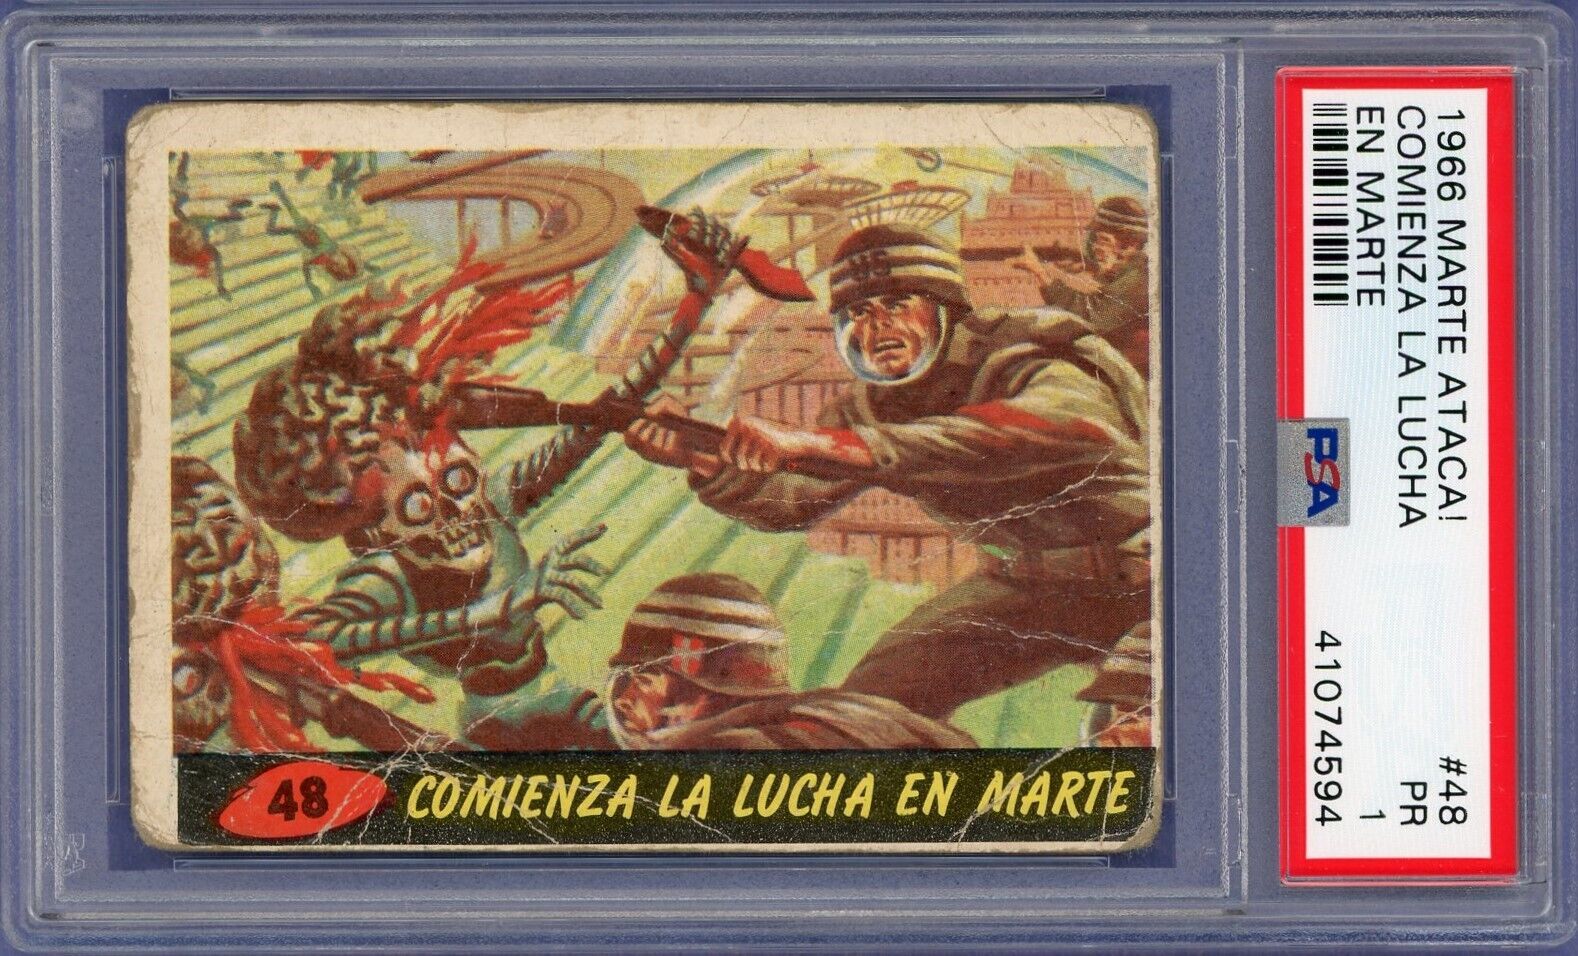 RARE 1966 Marte Ataca #48 Comienza La Lucha En Marte, Spanish Mars Attacks PSA